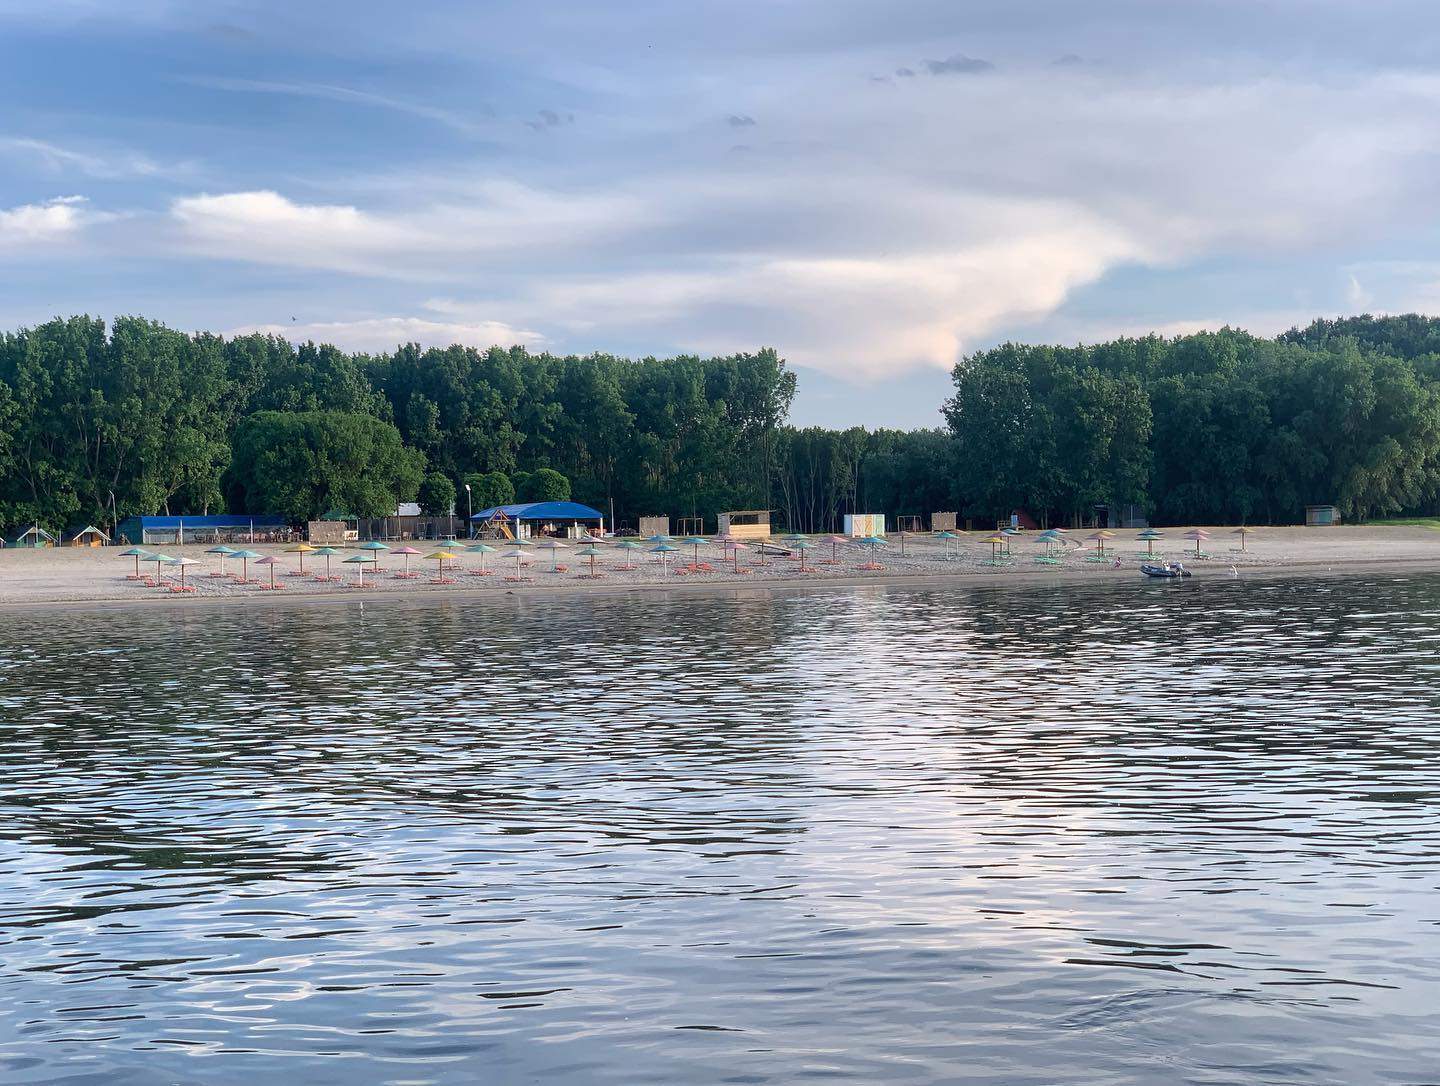 S-a deschis o nouă plajă în România. Este situată la o oră de mers de București. Foto